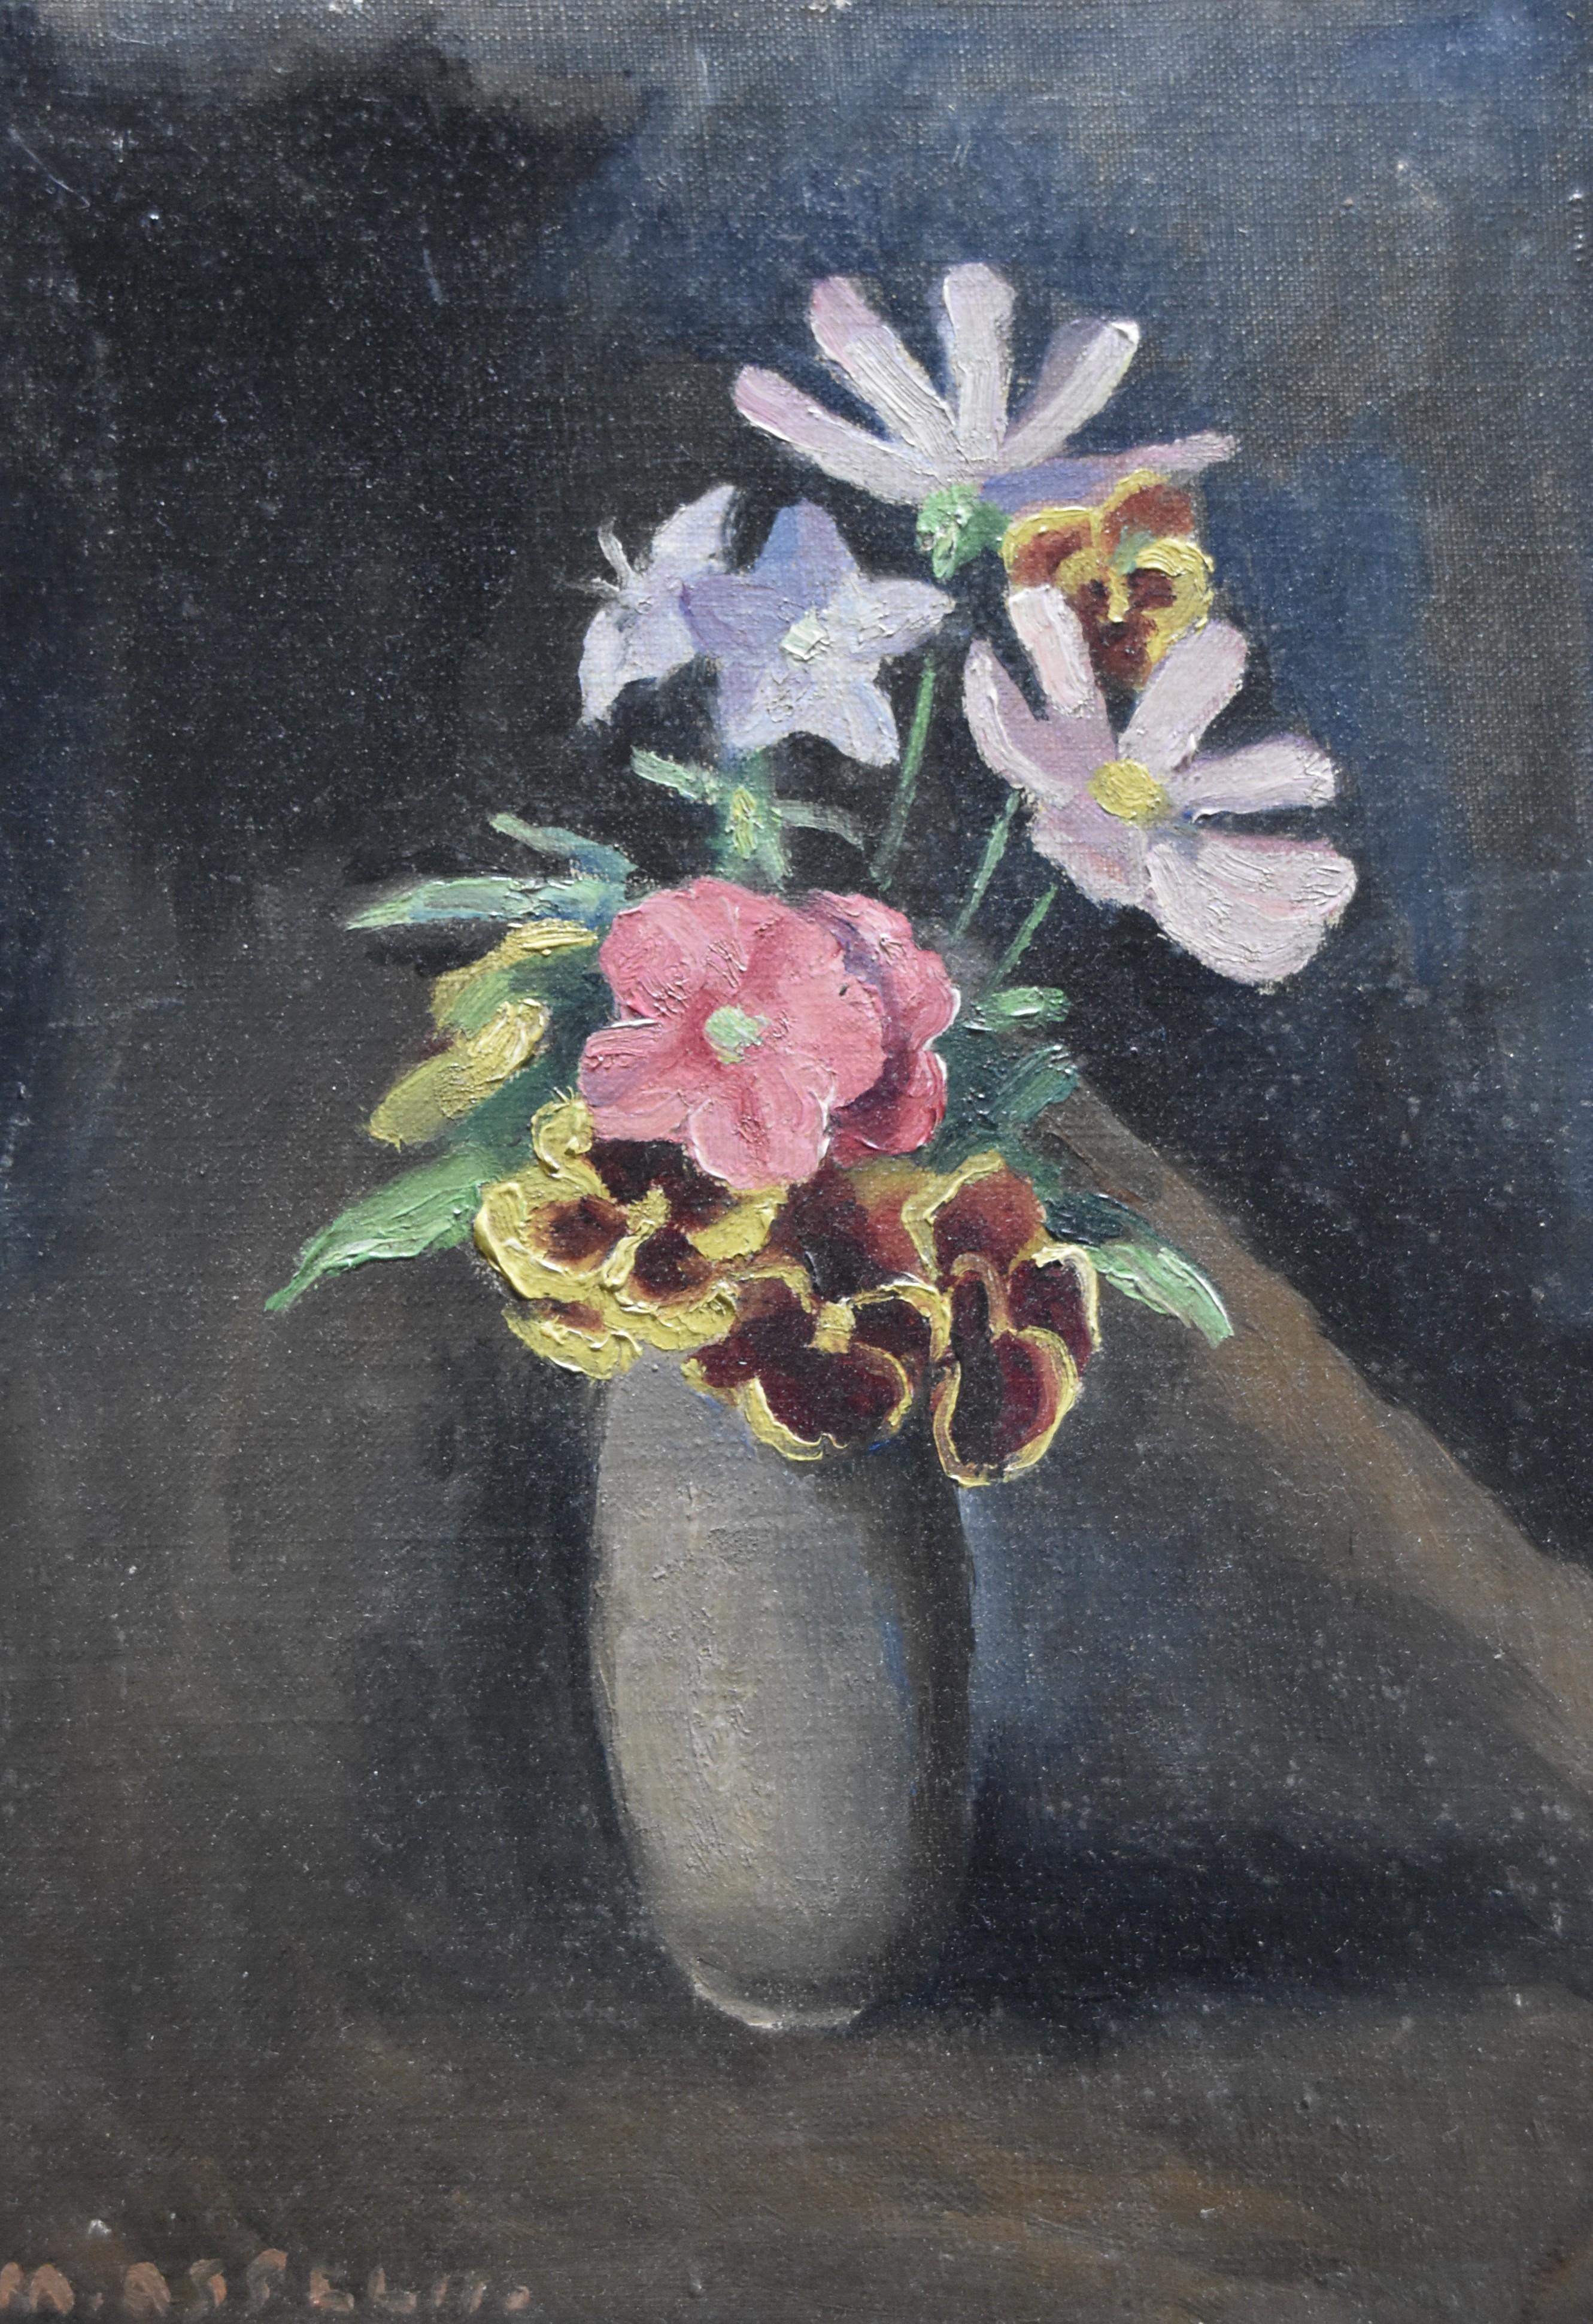 Maurice Asselin (1882-1947) 
Ein kleiner Blumenstrauß in einer Vase
Signiert unten links,  
Öl auf Leinwand
33 x 24 cm
In einem modernen Rahmen  : 44 x 35 cm


Maurice Asselin ist ein Maler und Graveur, Mitglied der 